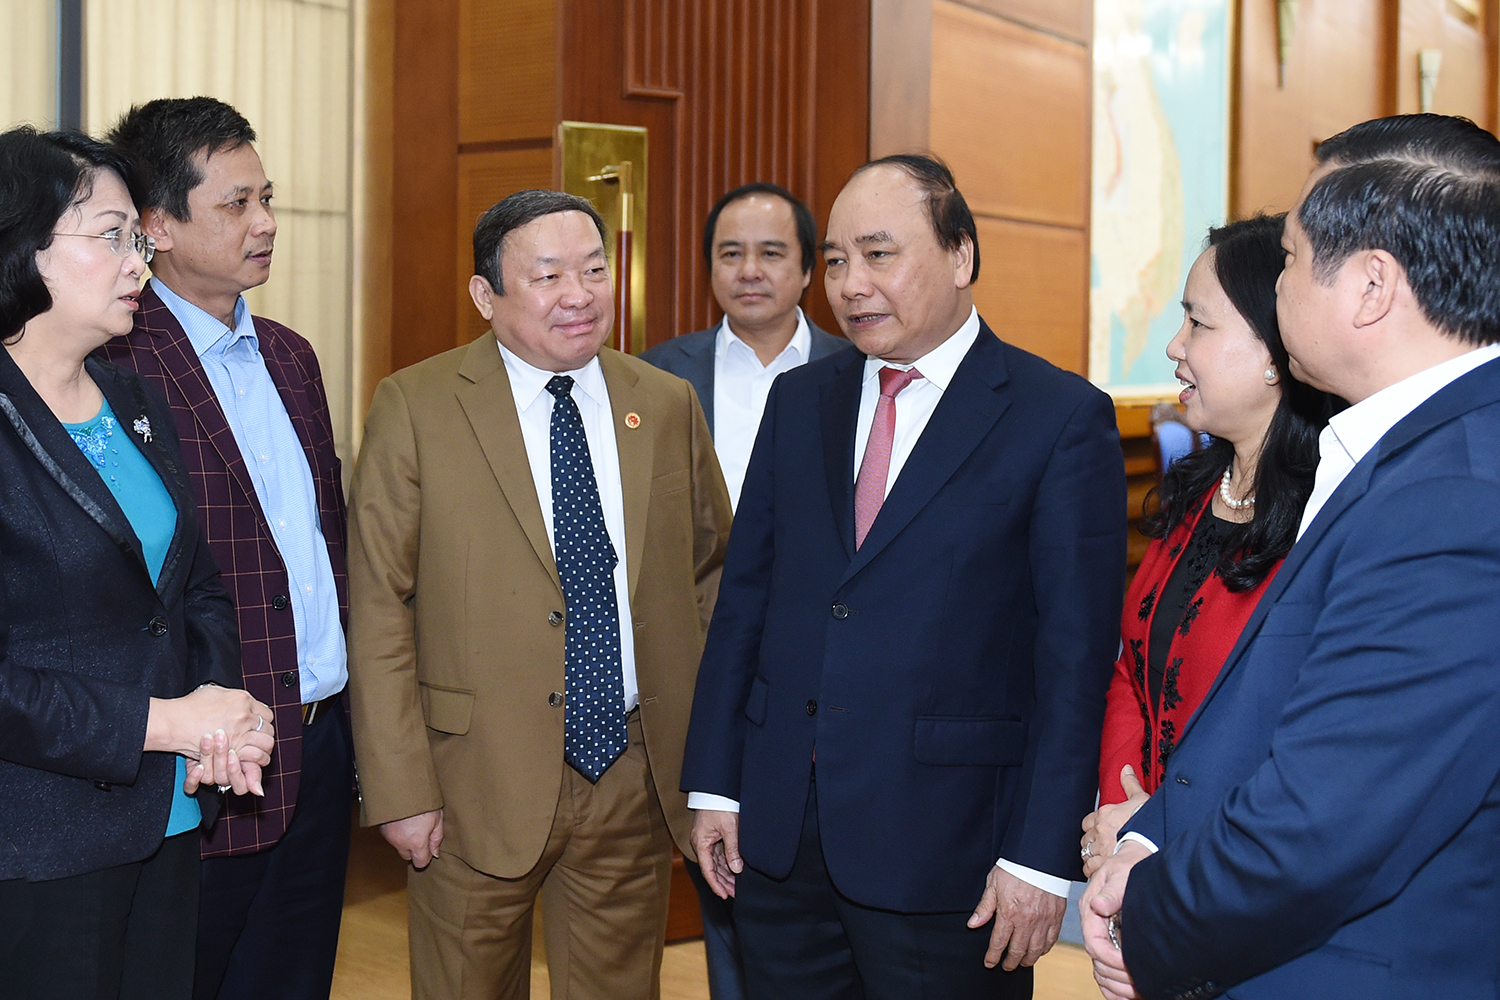  Thủ tướng Nguyễn Xuân Phúc và các đại biểu. Ảnh: VGP